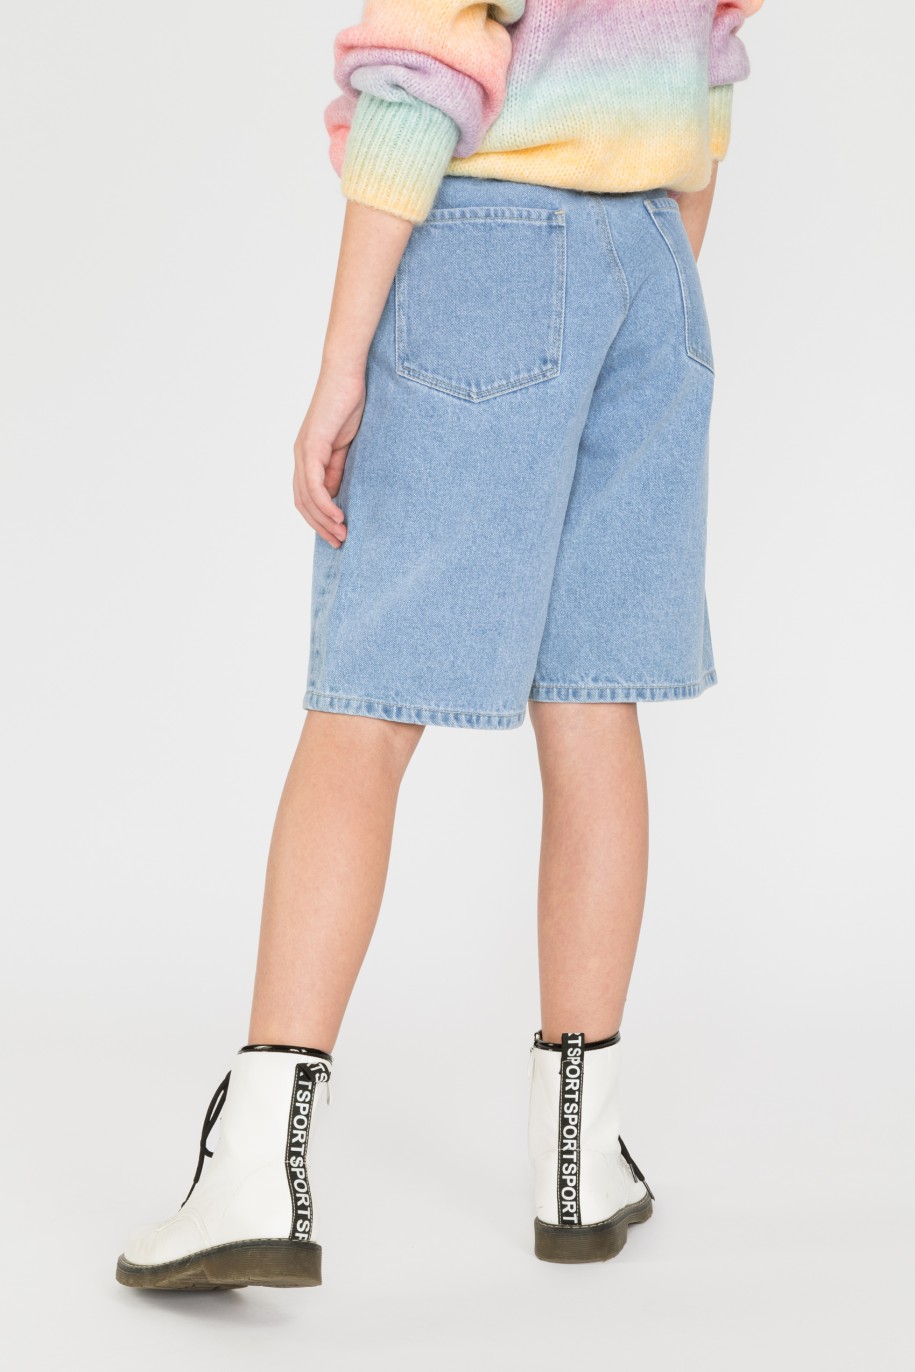 Jeansowe krótkie spodenki dla dziewczyny - 41559